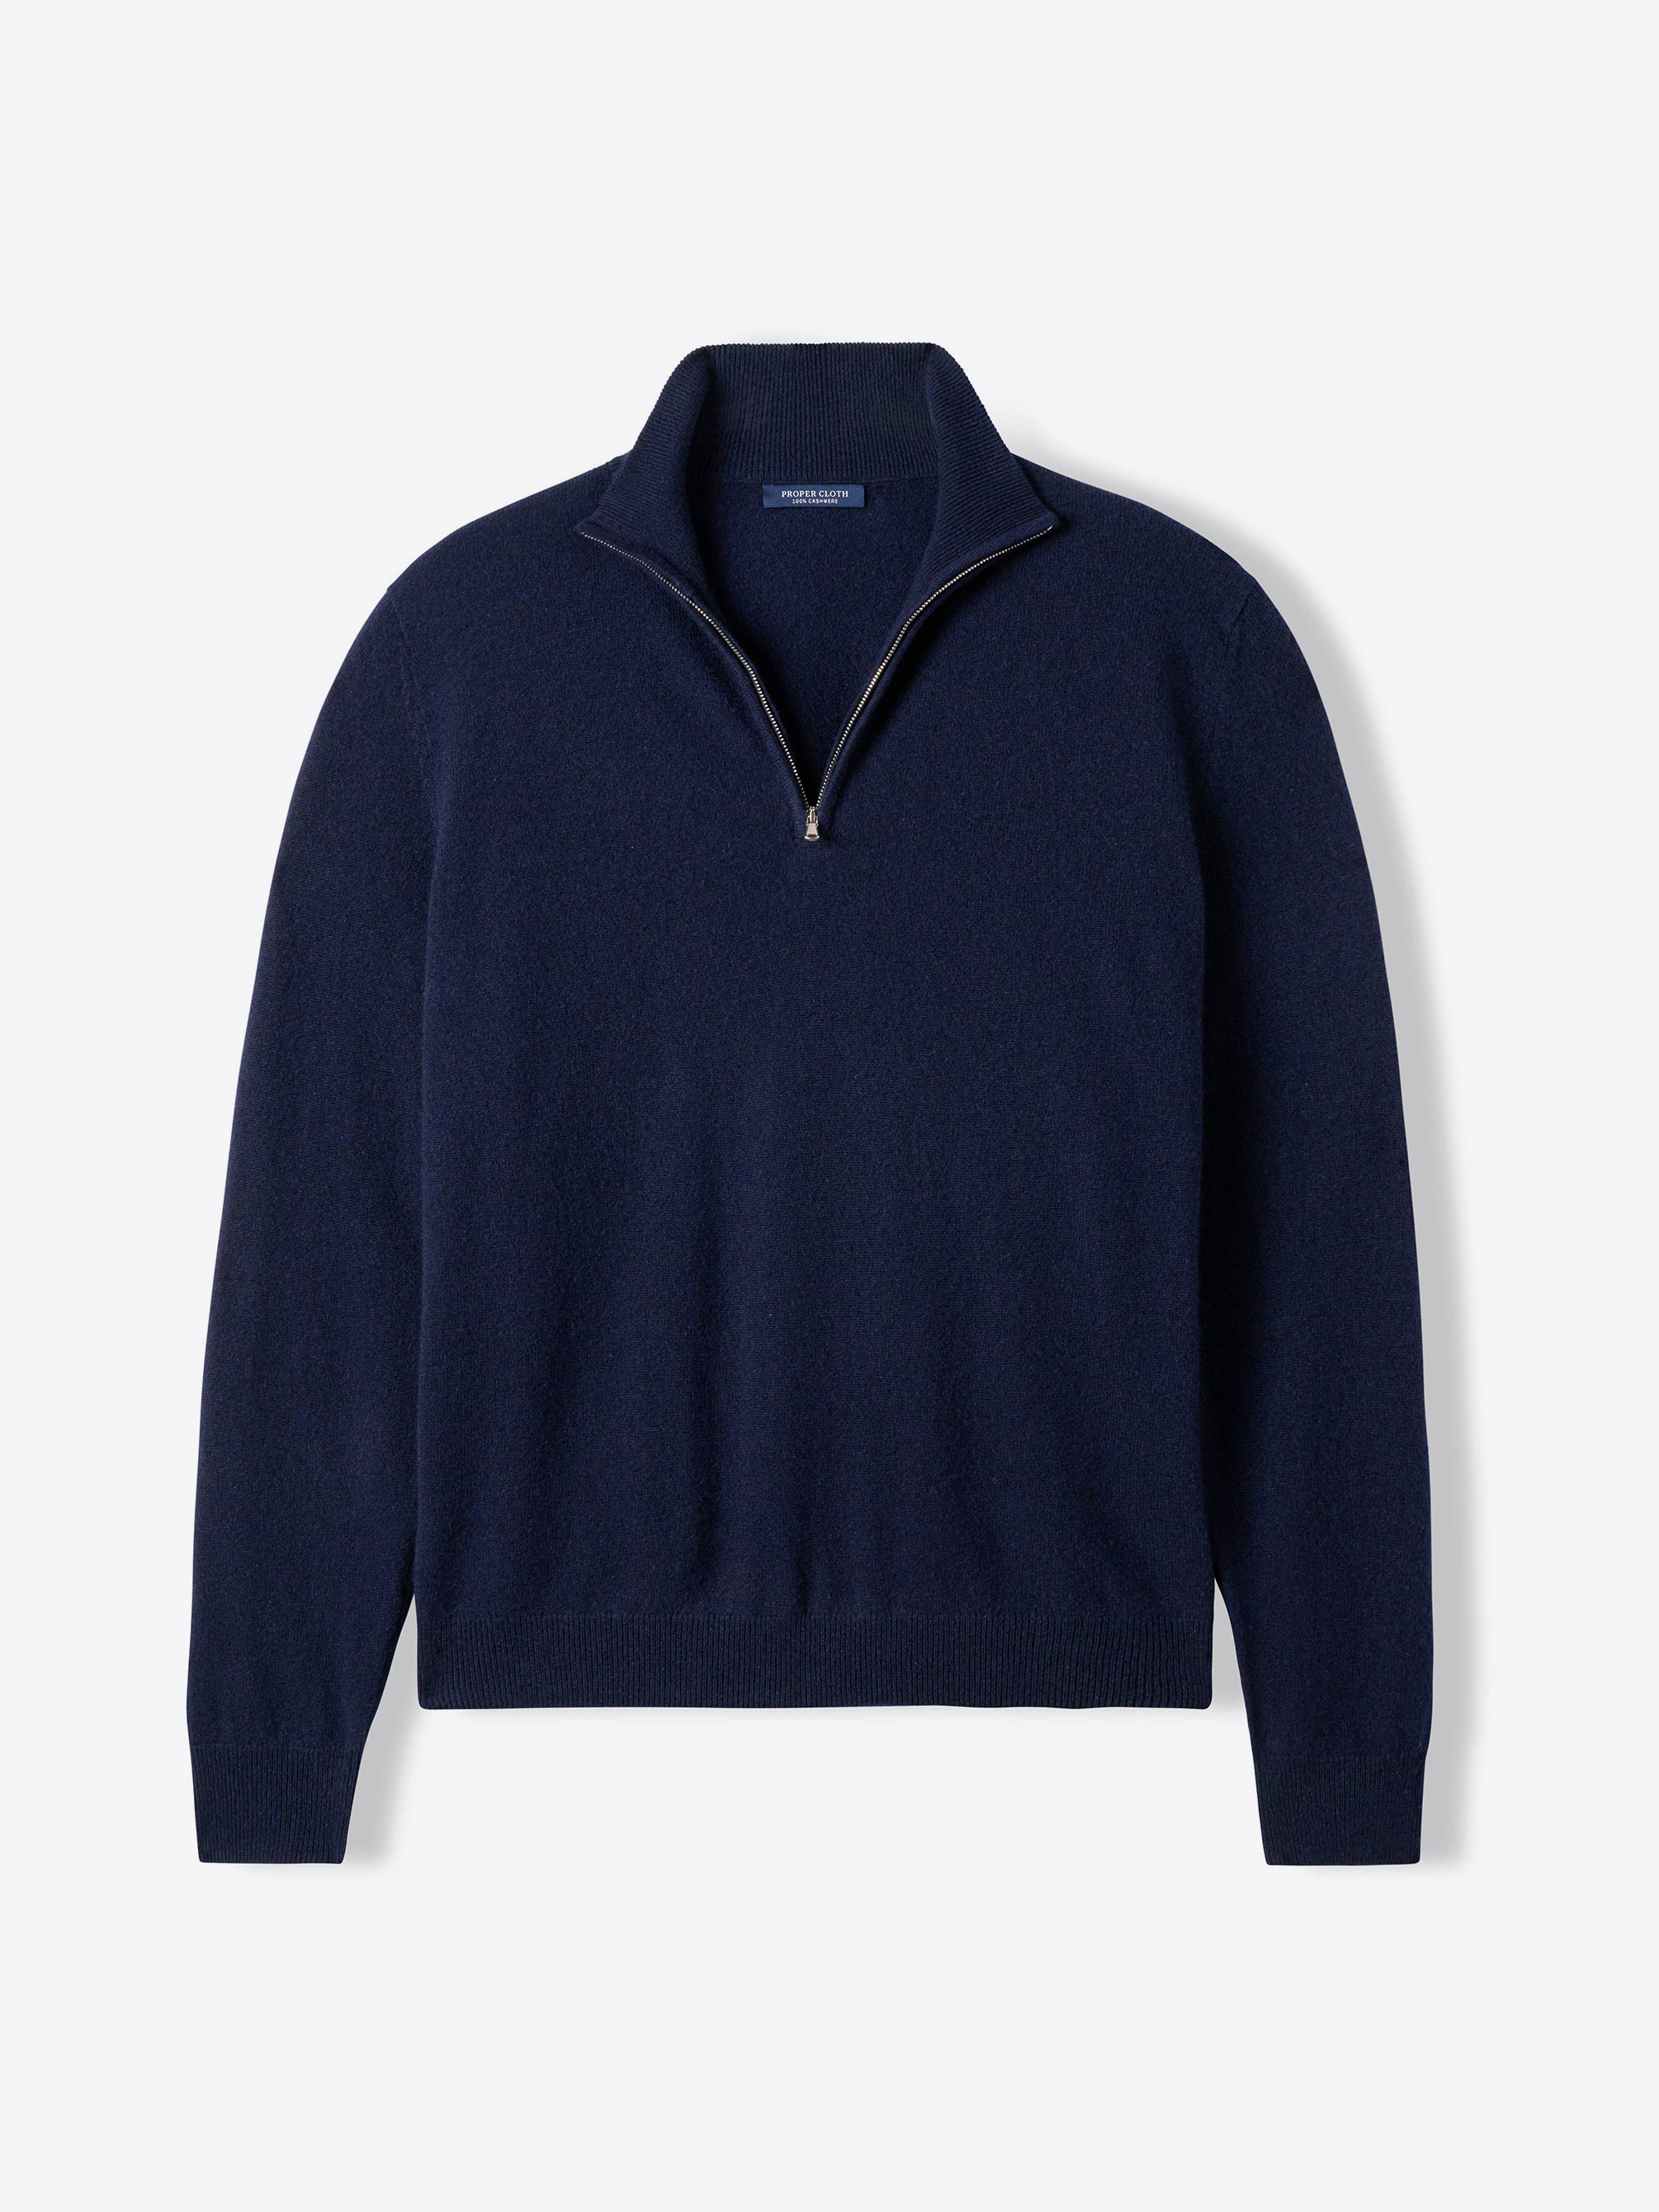 Zoom Image of Navy Cashmere Half-Zip Sweater